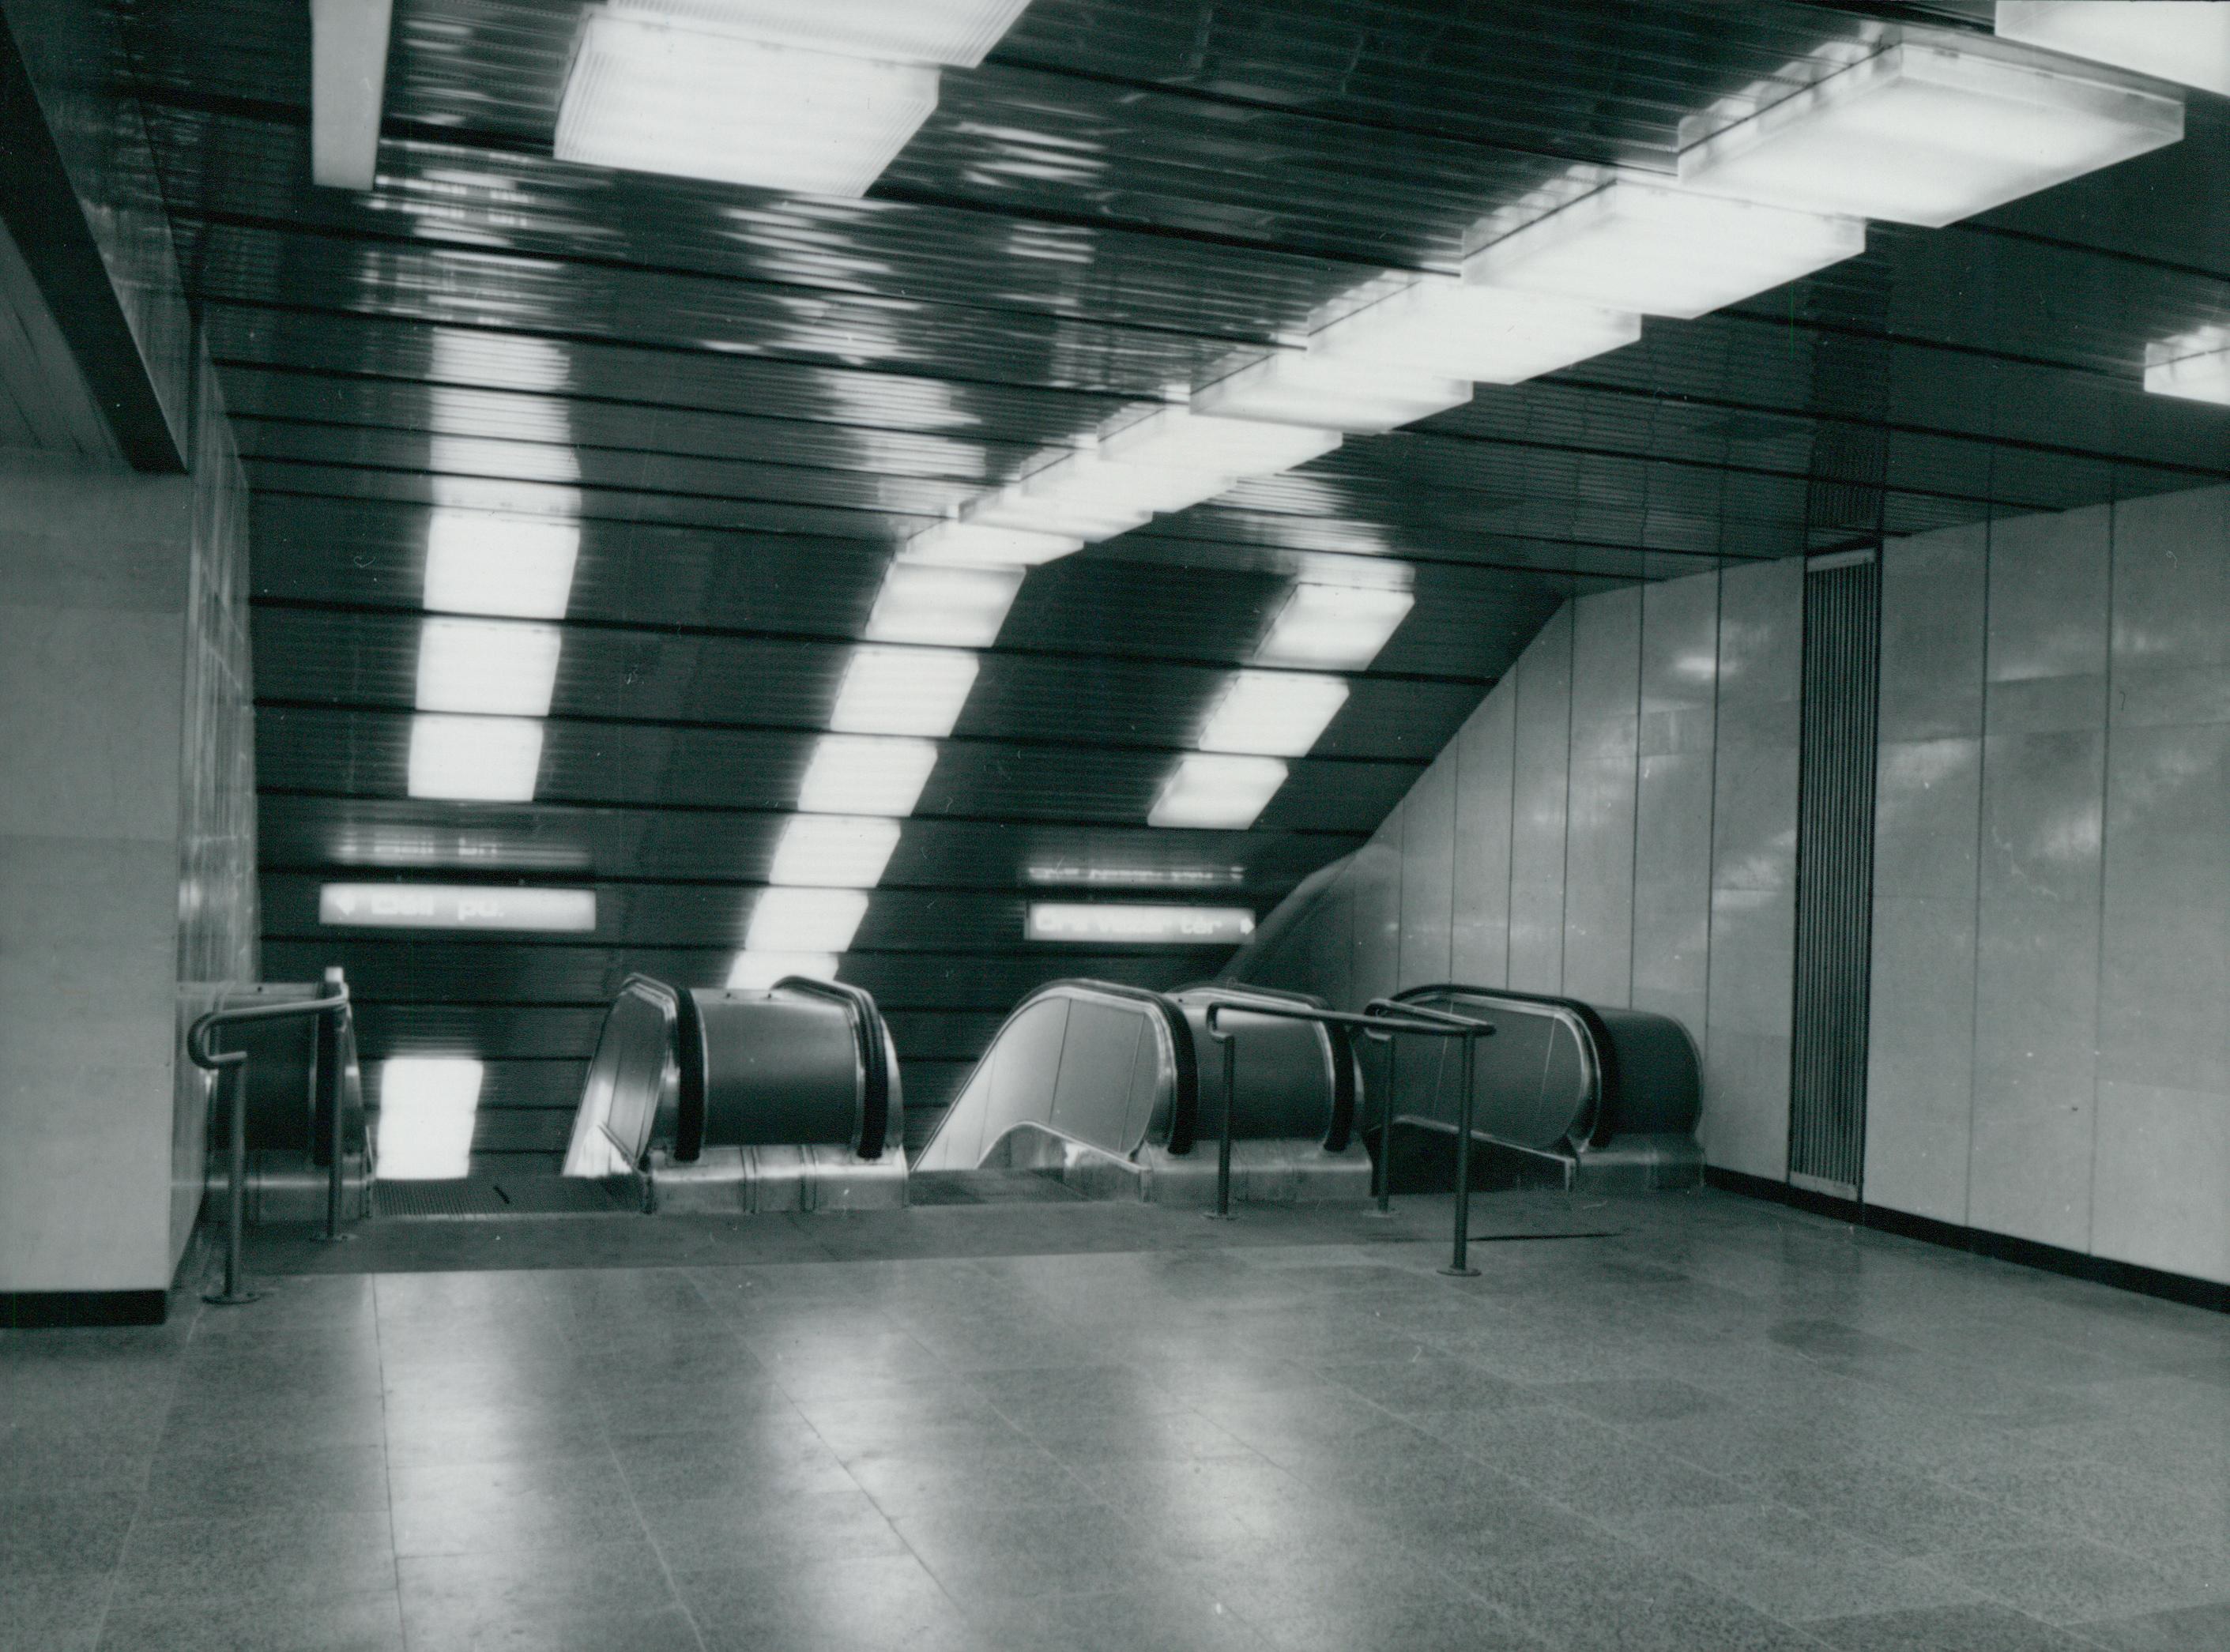 Mozgólépcsők a Deák téri metró aluljáróban